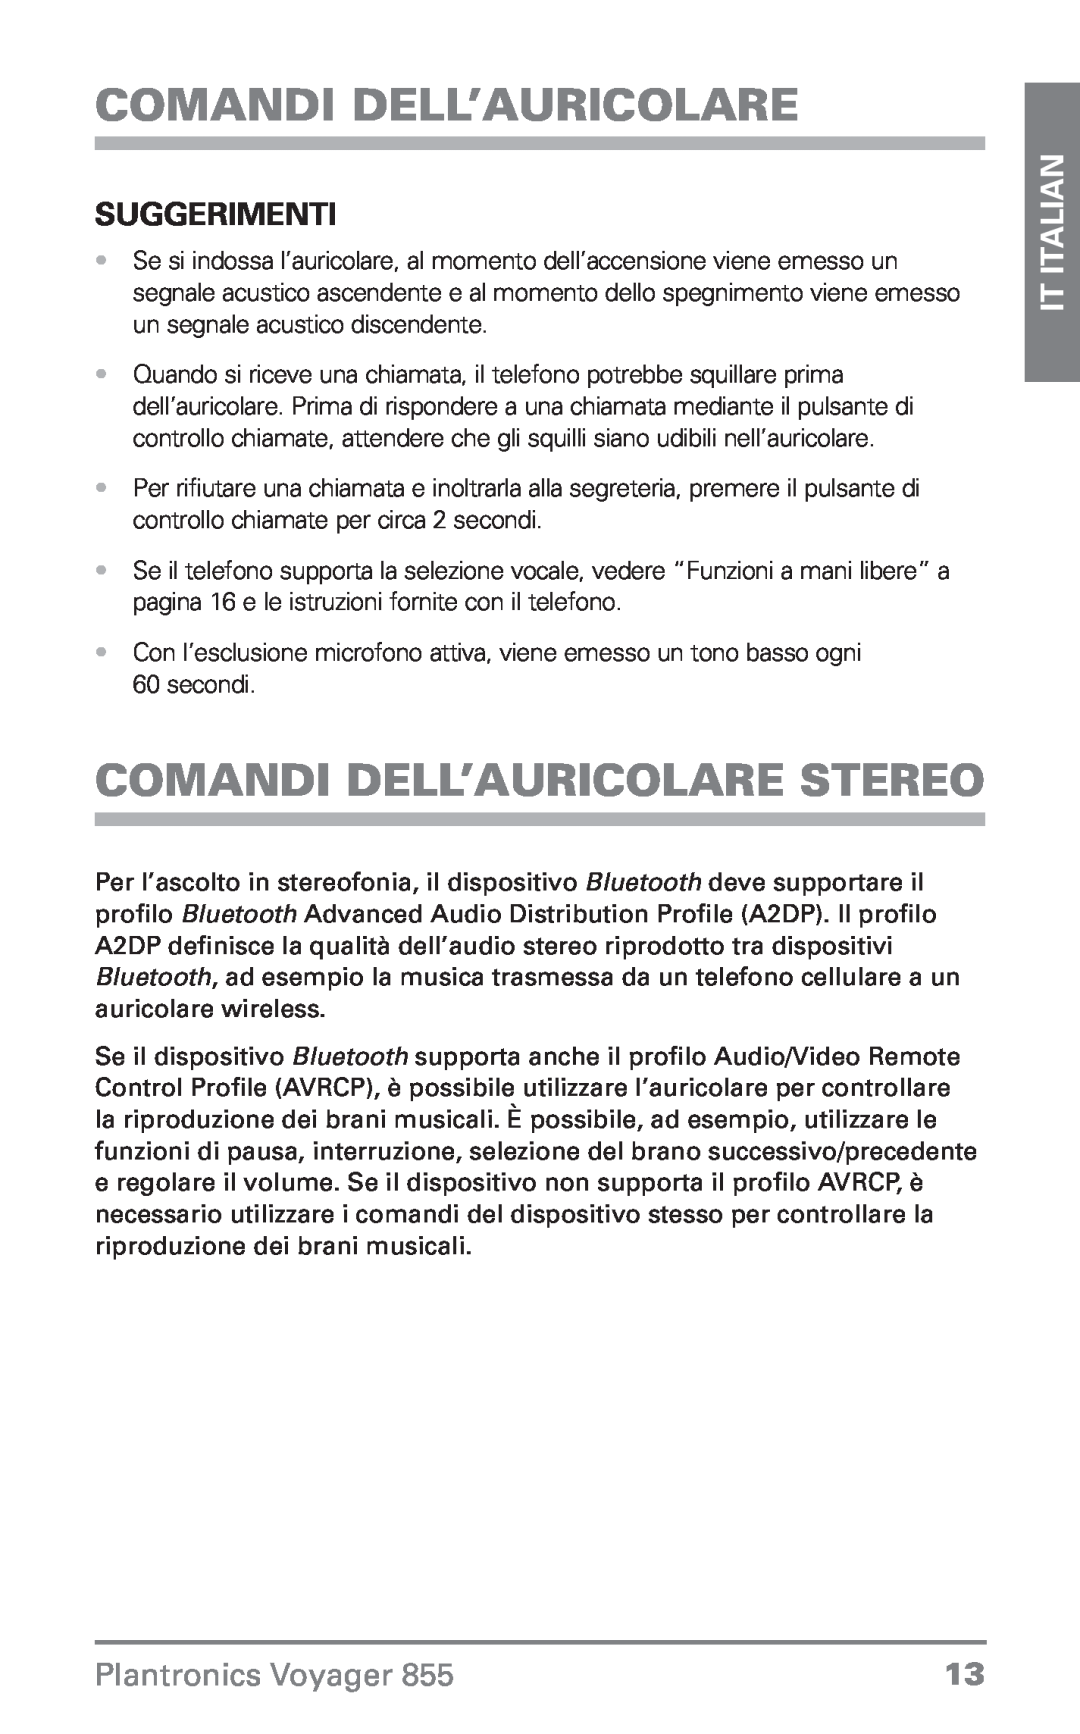 Plantronics Voyager 855 manual do utilizador Comandi dell’auricolare stereo, Suggerimenti, IT Italian, Plantronics Voyager 